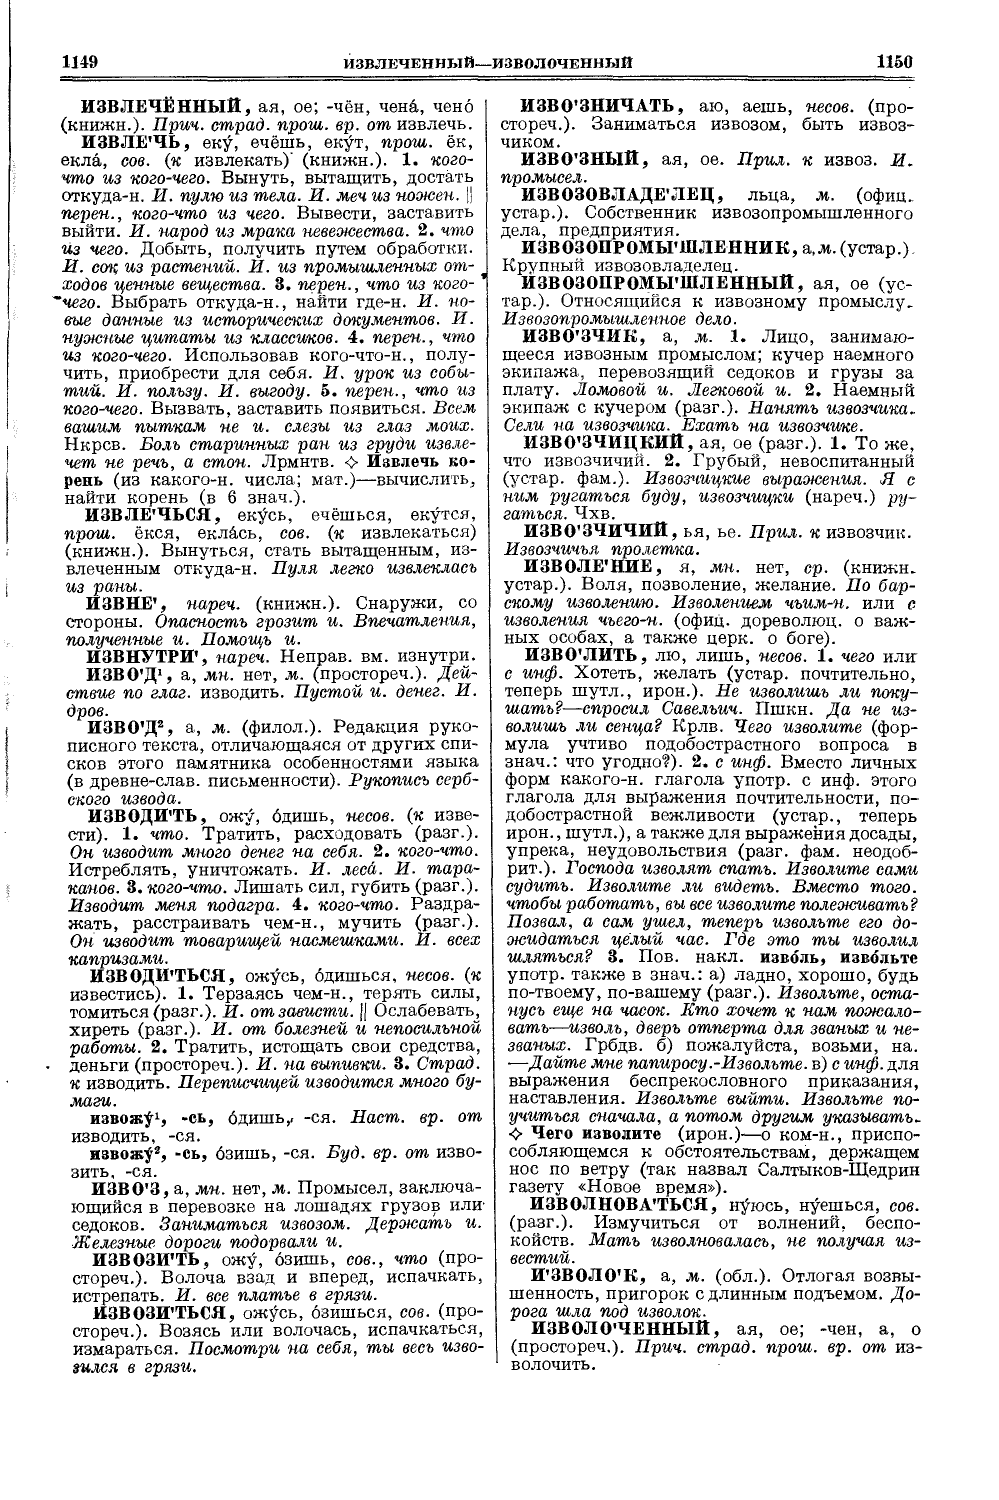 Фотокопия pdf / скан страницы 613 толкового словаря Ушакова (том 1)